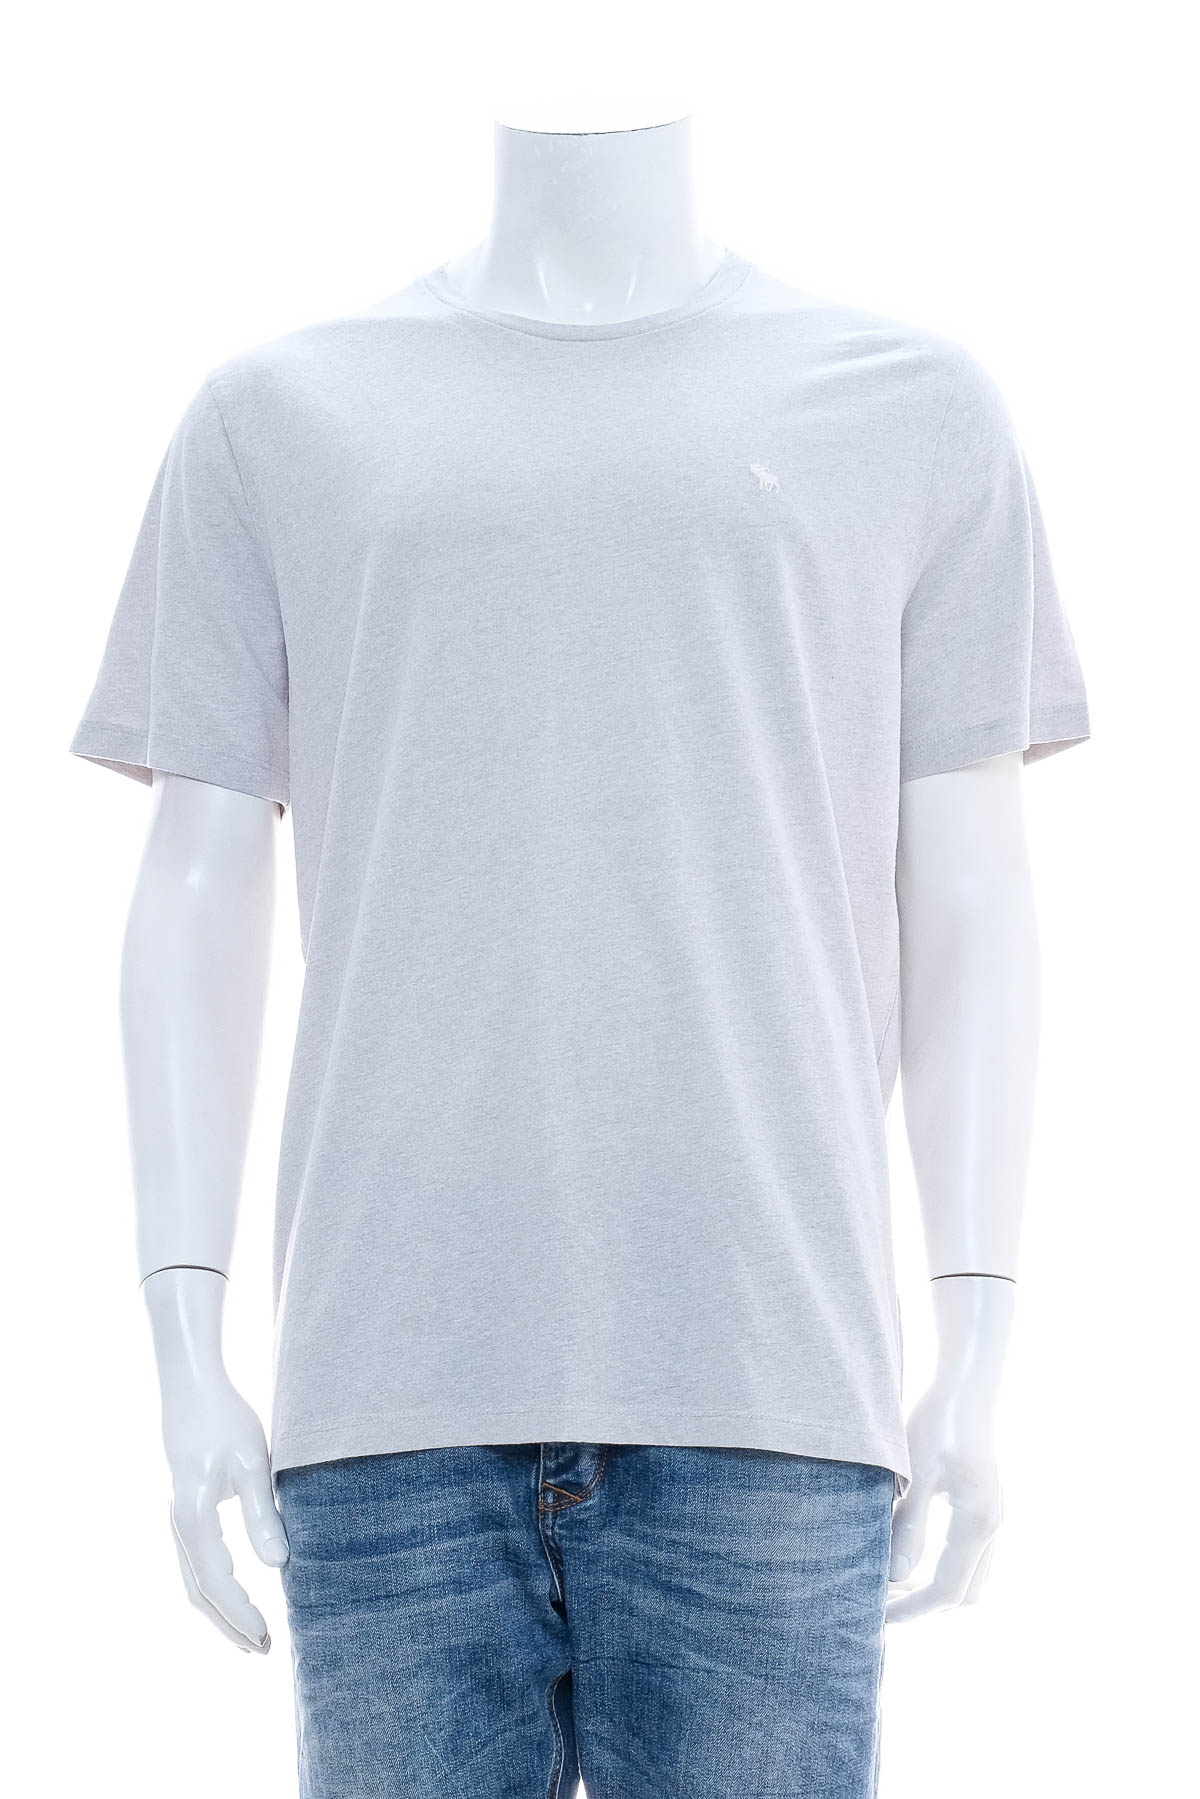 Tricou pentru bărbați - Abercrombie & Fitch - 0